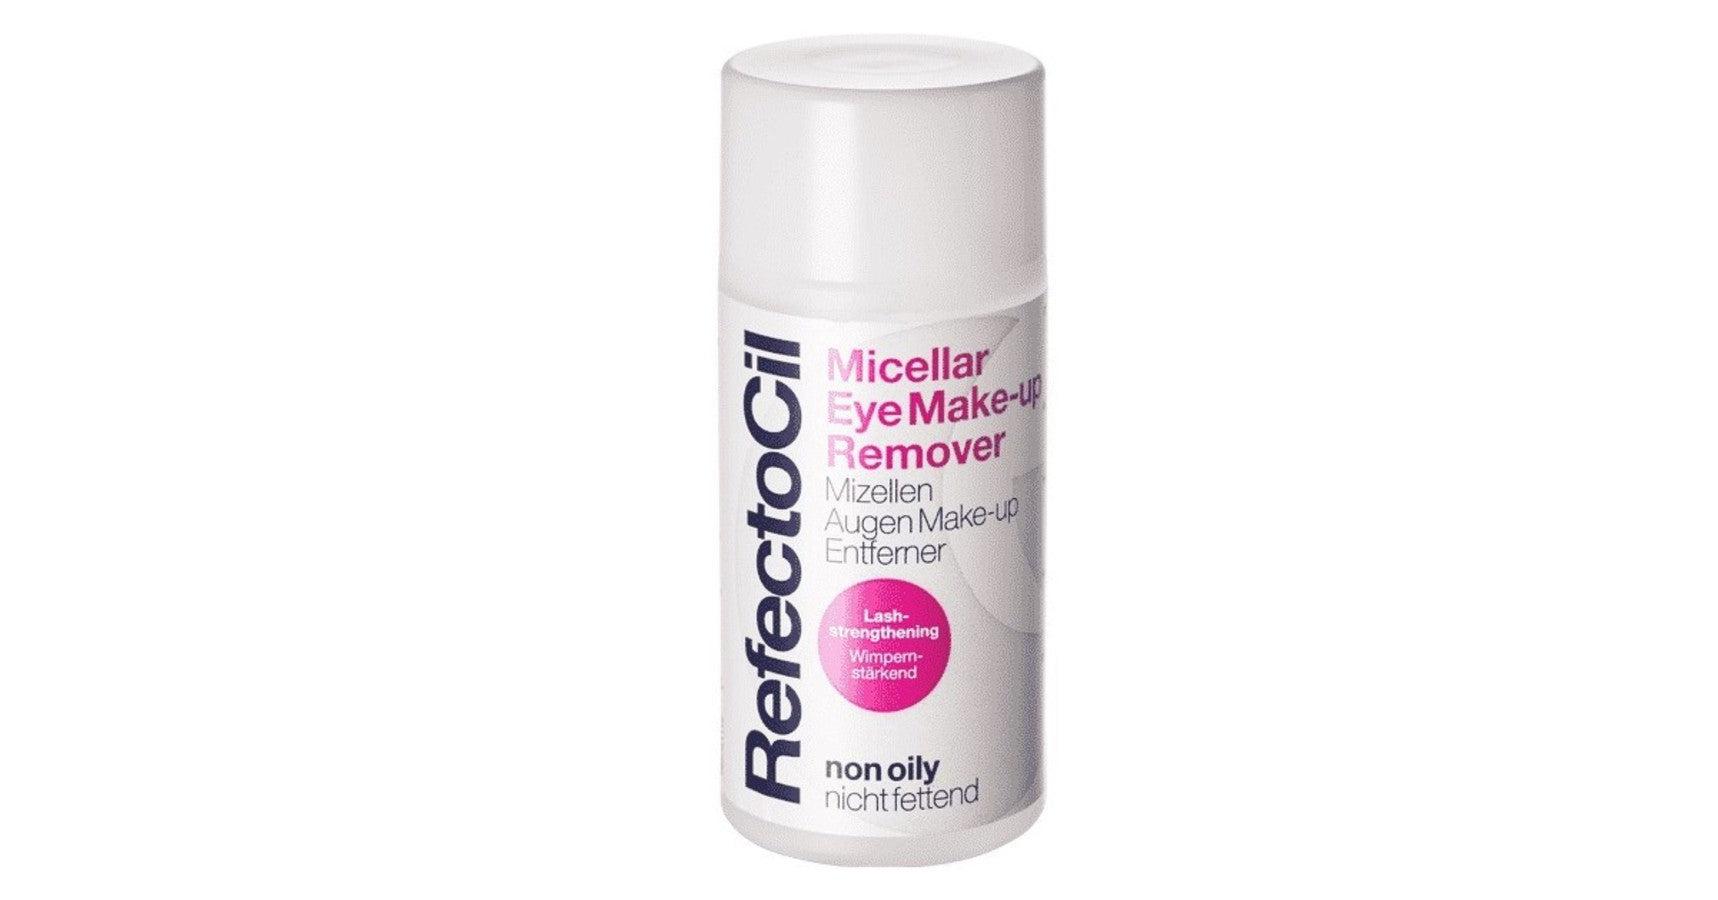 RefectoCil Micellar Eye Make-up Remover - non-oily (150ml)